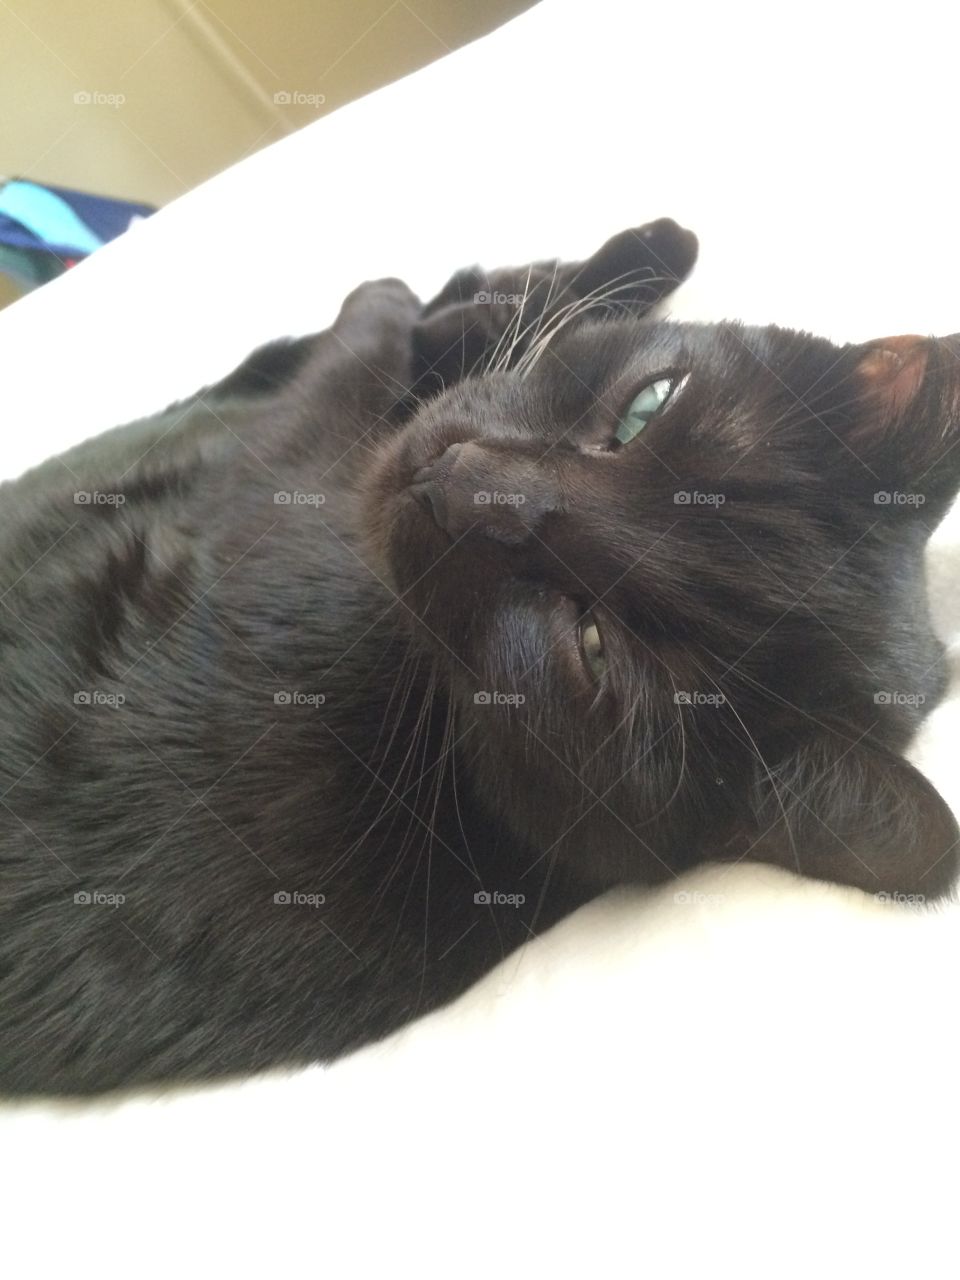 Sleeping beautiful black cat. 